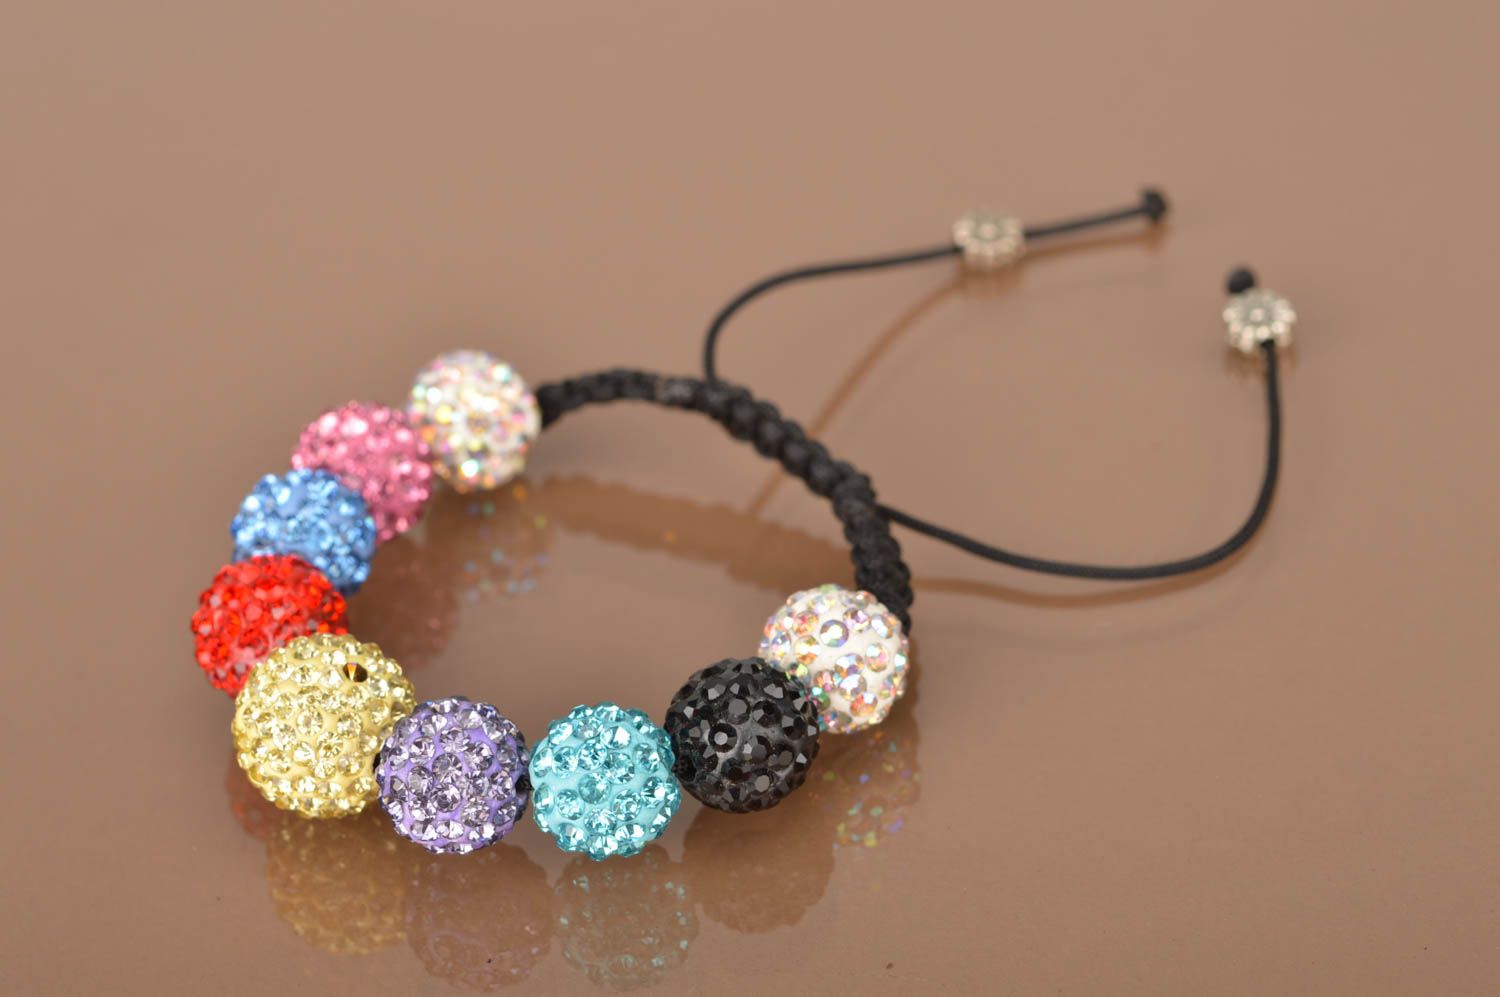 Stylish homemade braided bracelet textile wrist bracelet with beads gift ideas photo 5